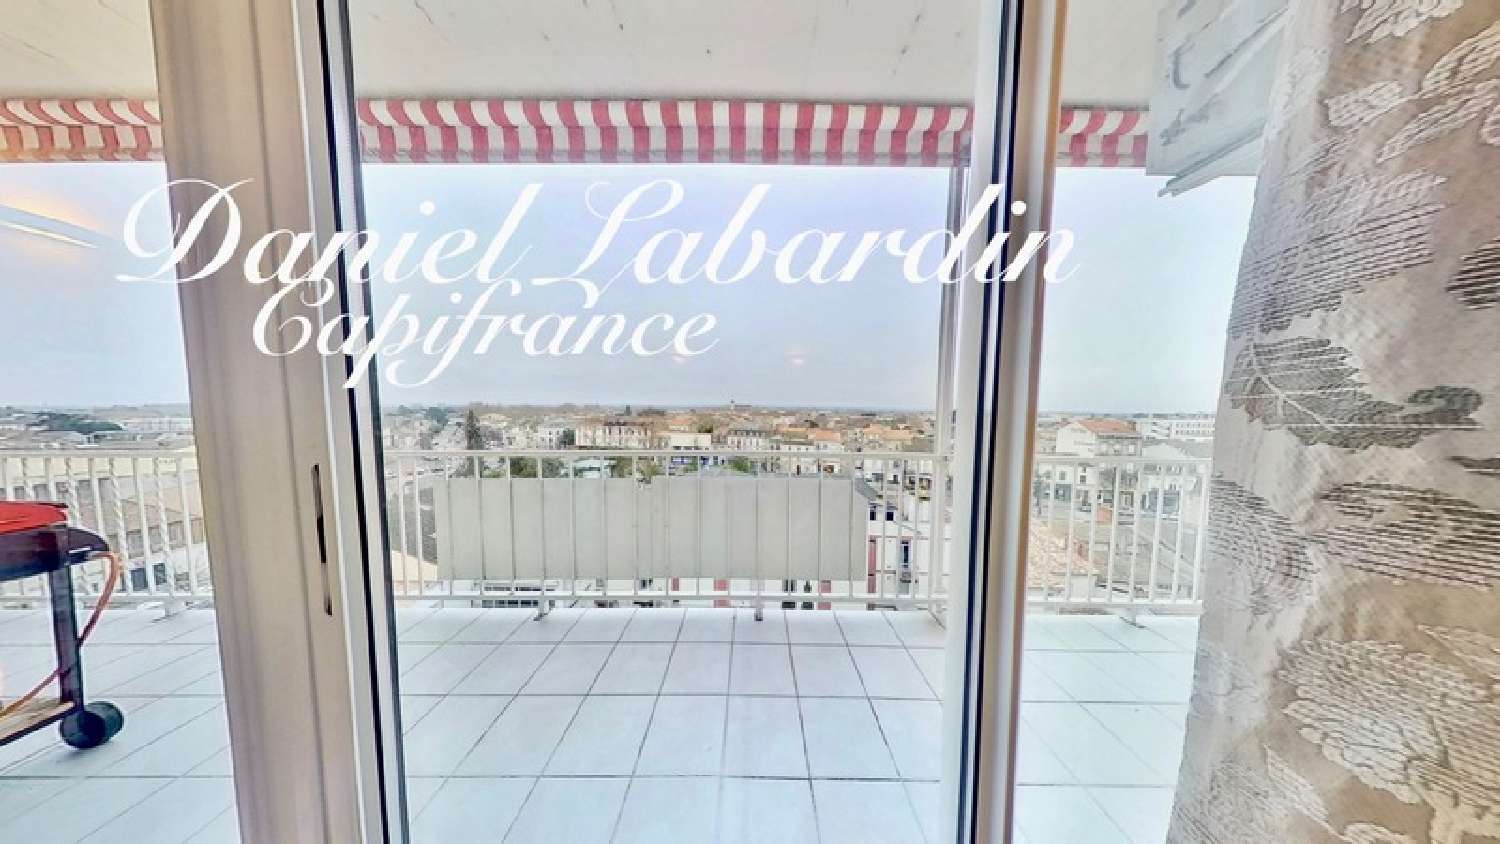  à vendre appartement Marmande Lot-et-Garonne 4